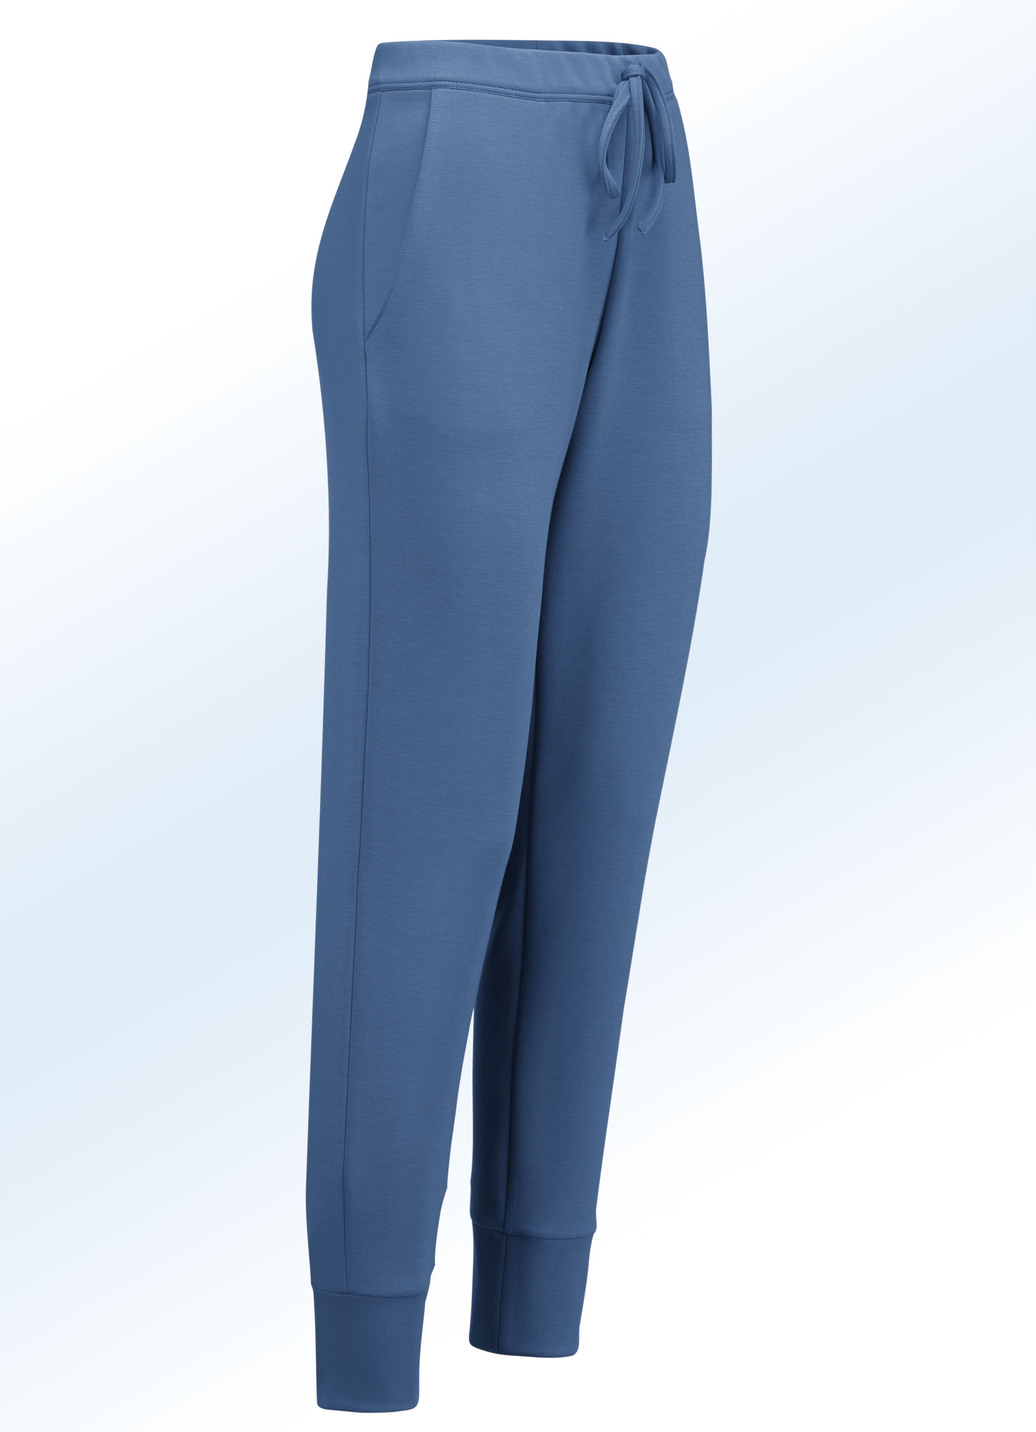 Jerseyhose im stadttauglichen Joggpant-Style, Jeansblau, Größe 46 von KLAUS MODELLE